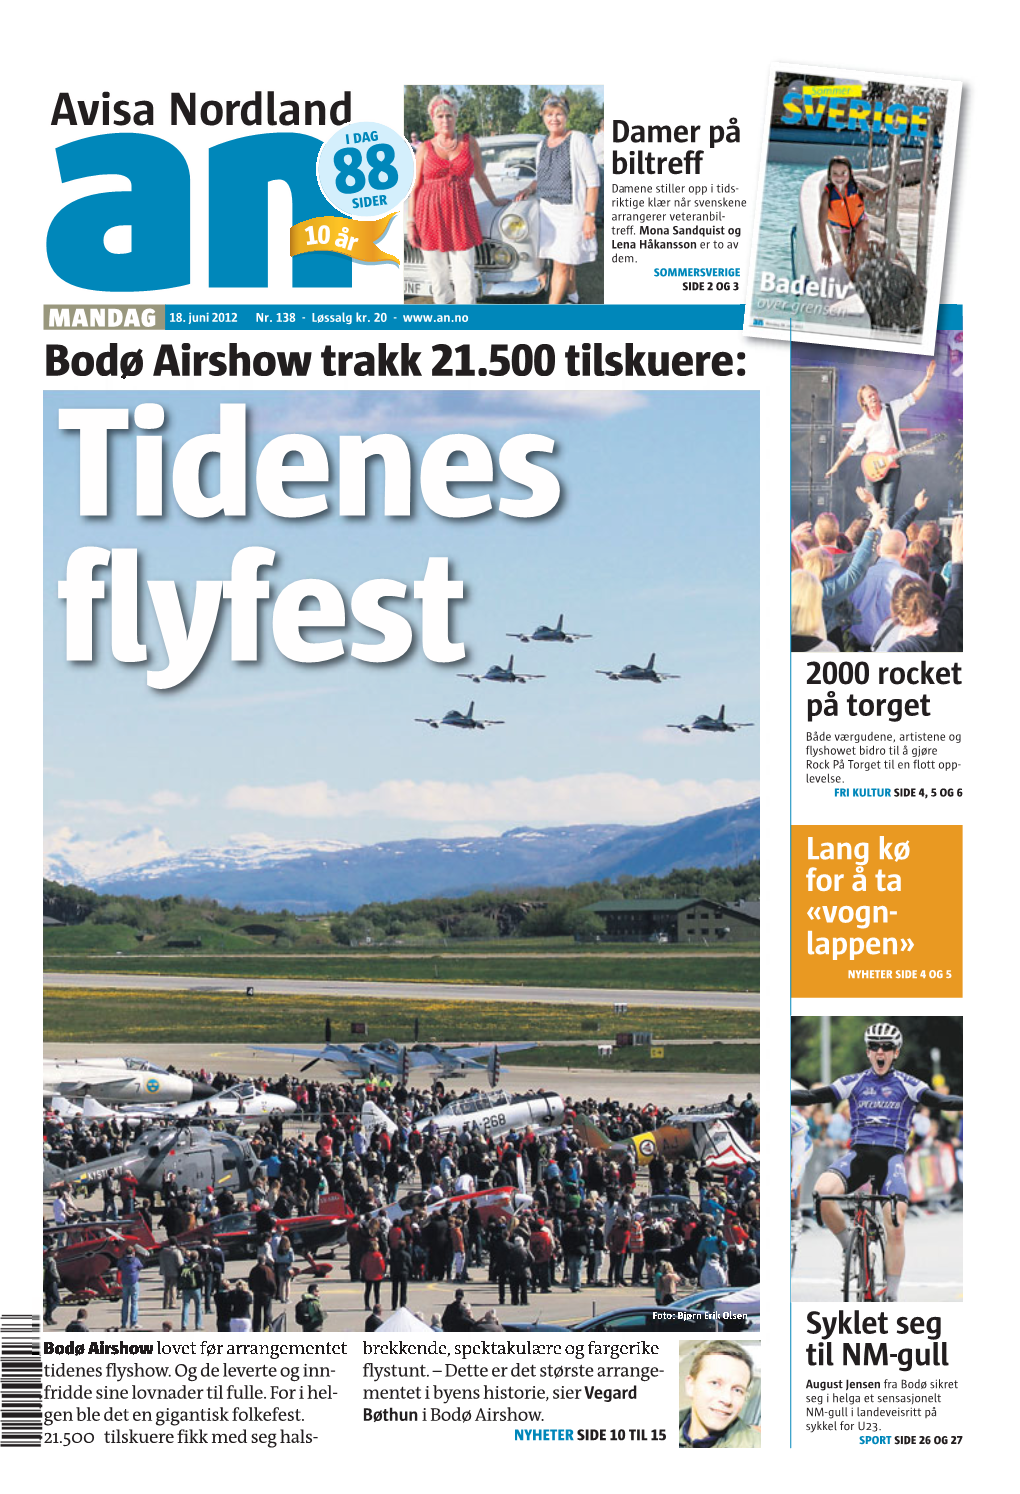 Bodø Airshow Trakk 21.500 Tilskuere